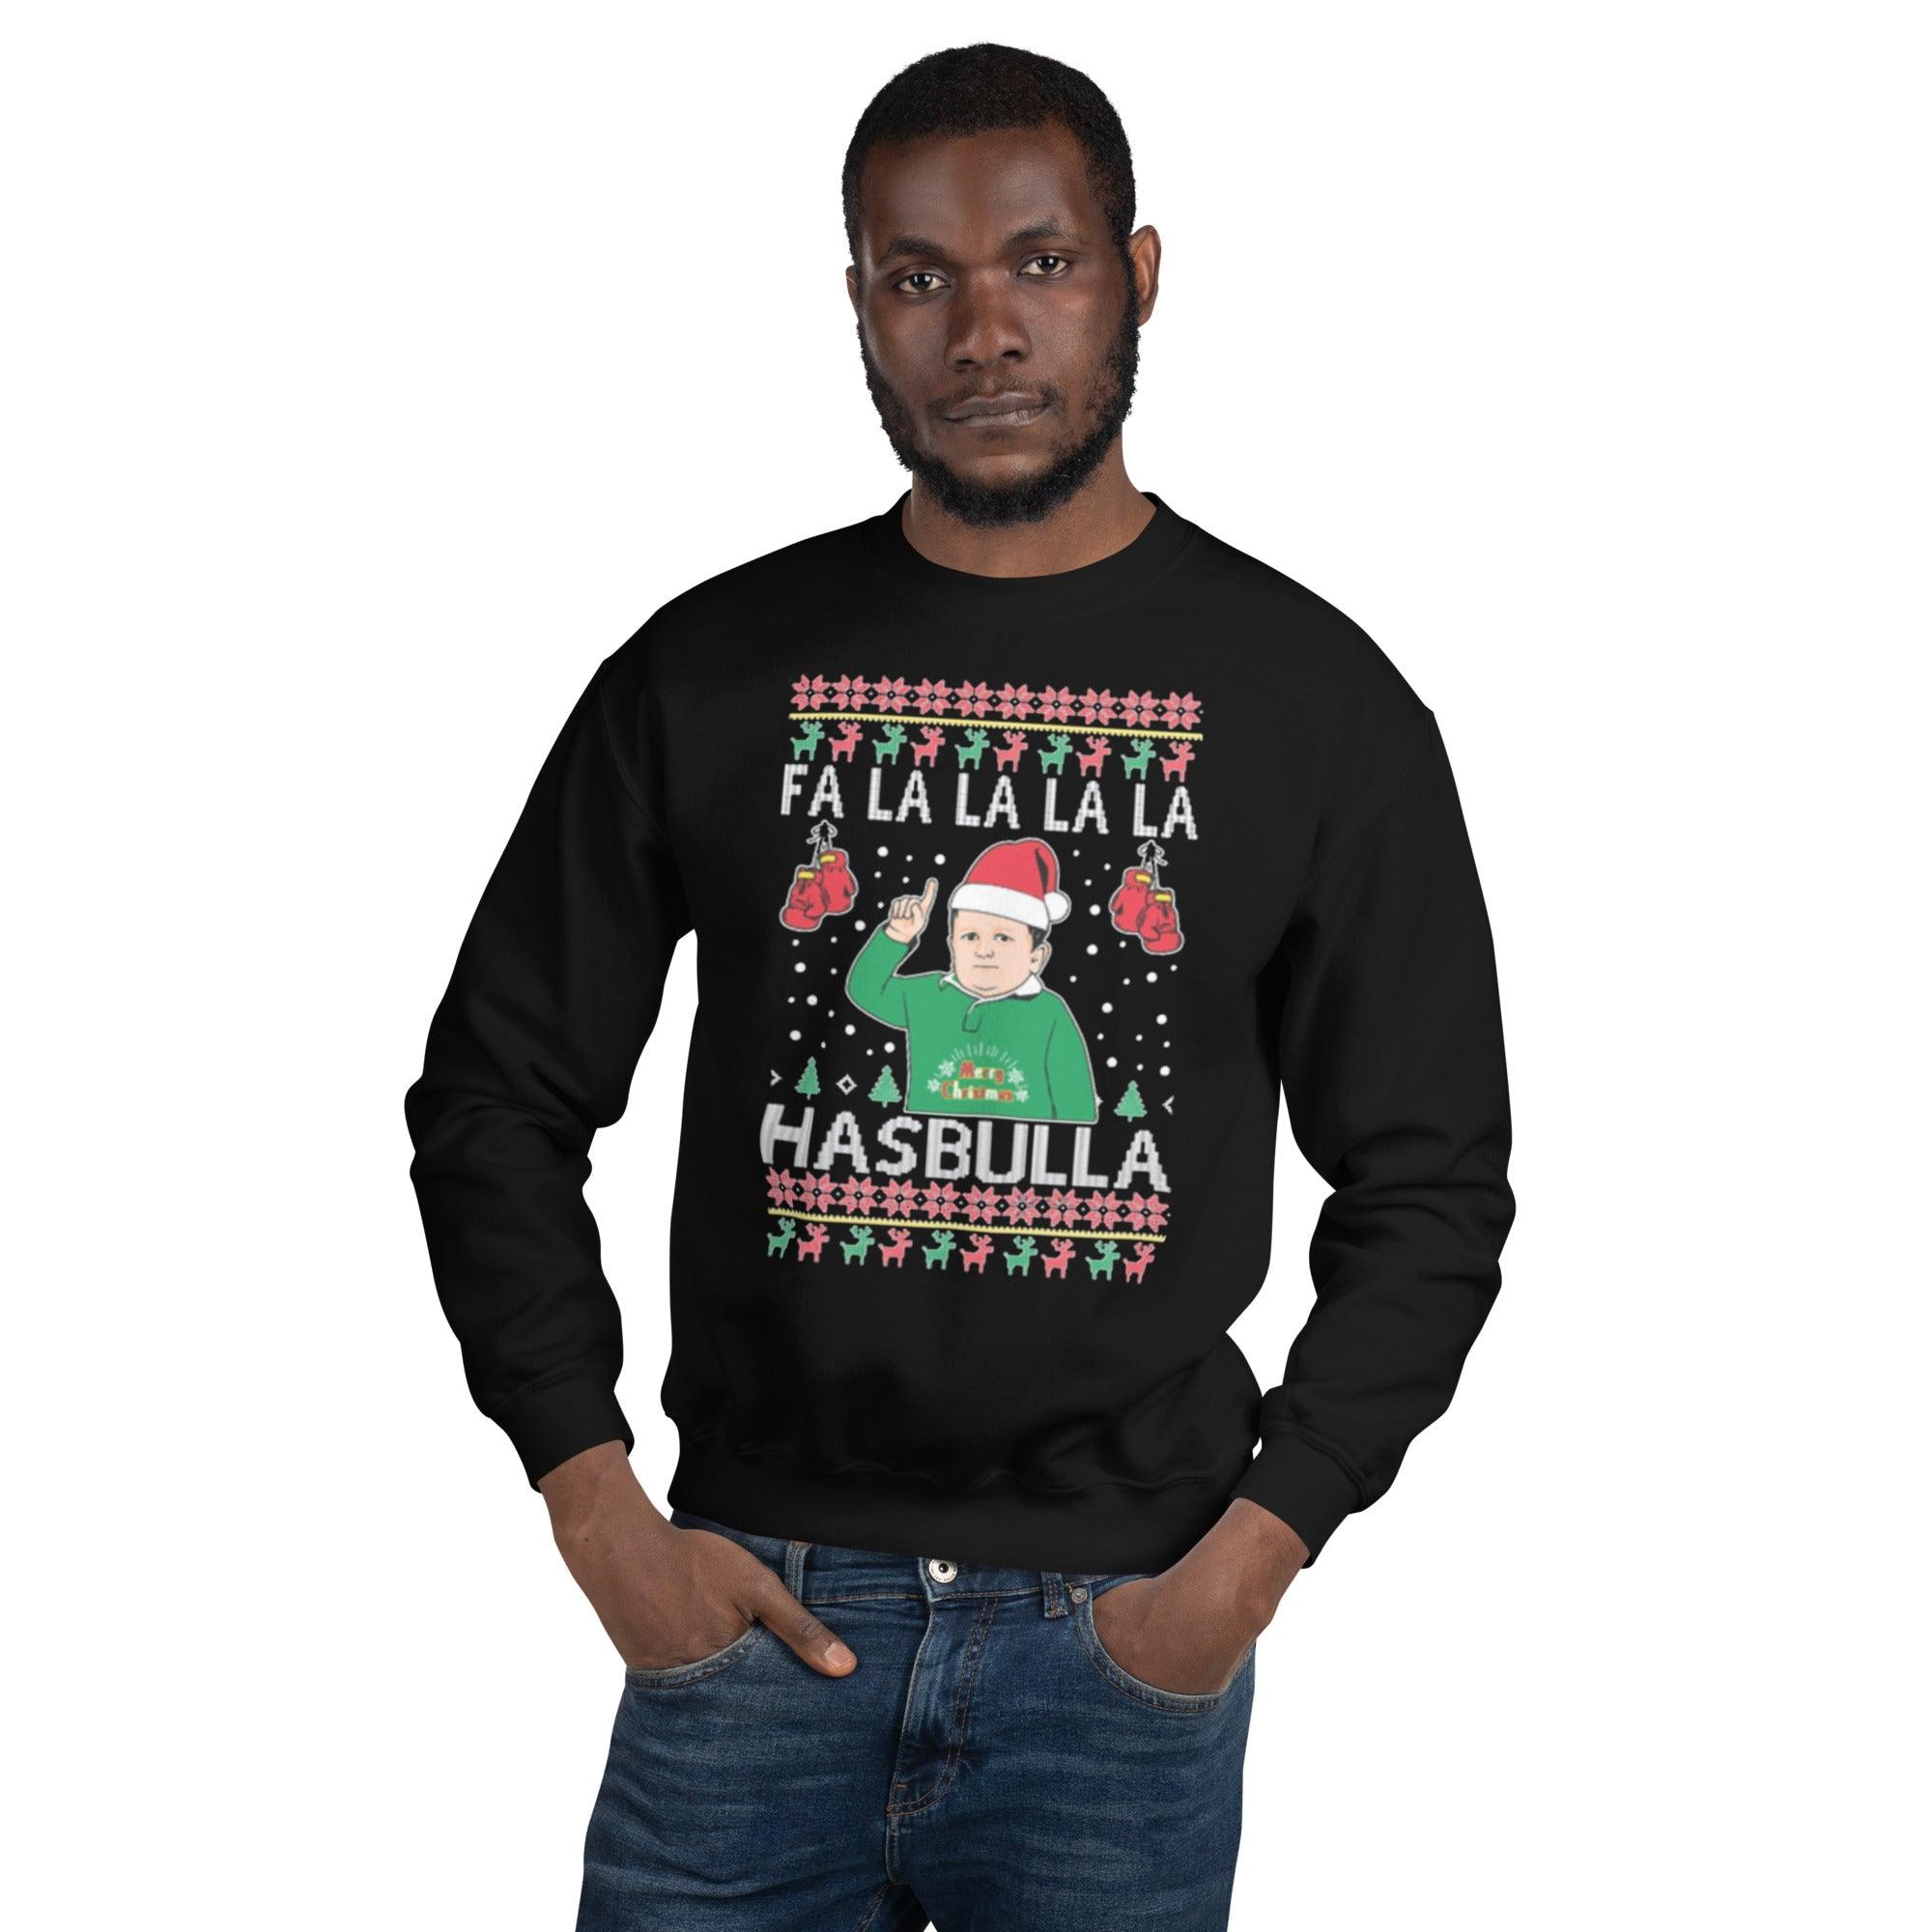 Fa La La La Hasbullah Top Koala Tee Ugly Christmas Sweater - TopKoalaTee